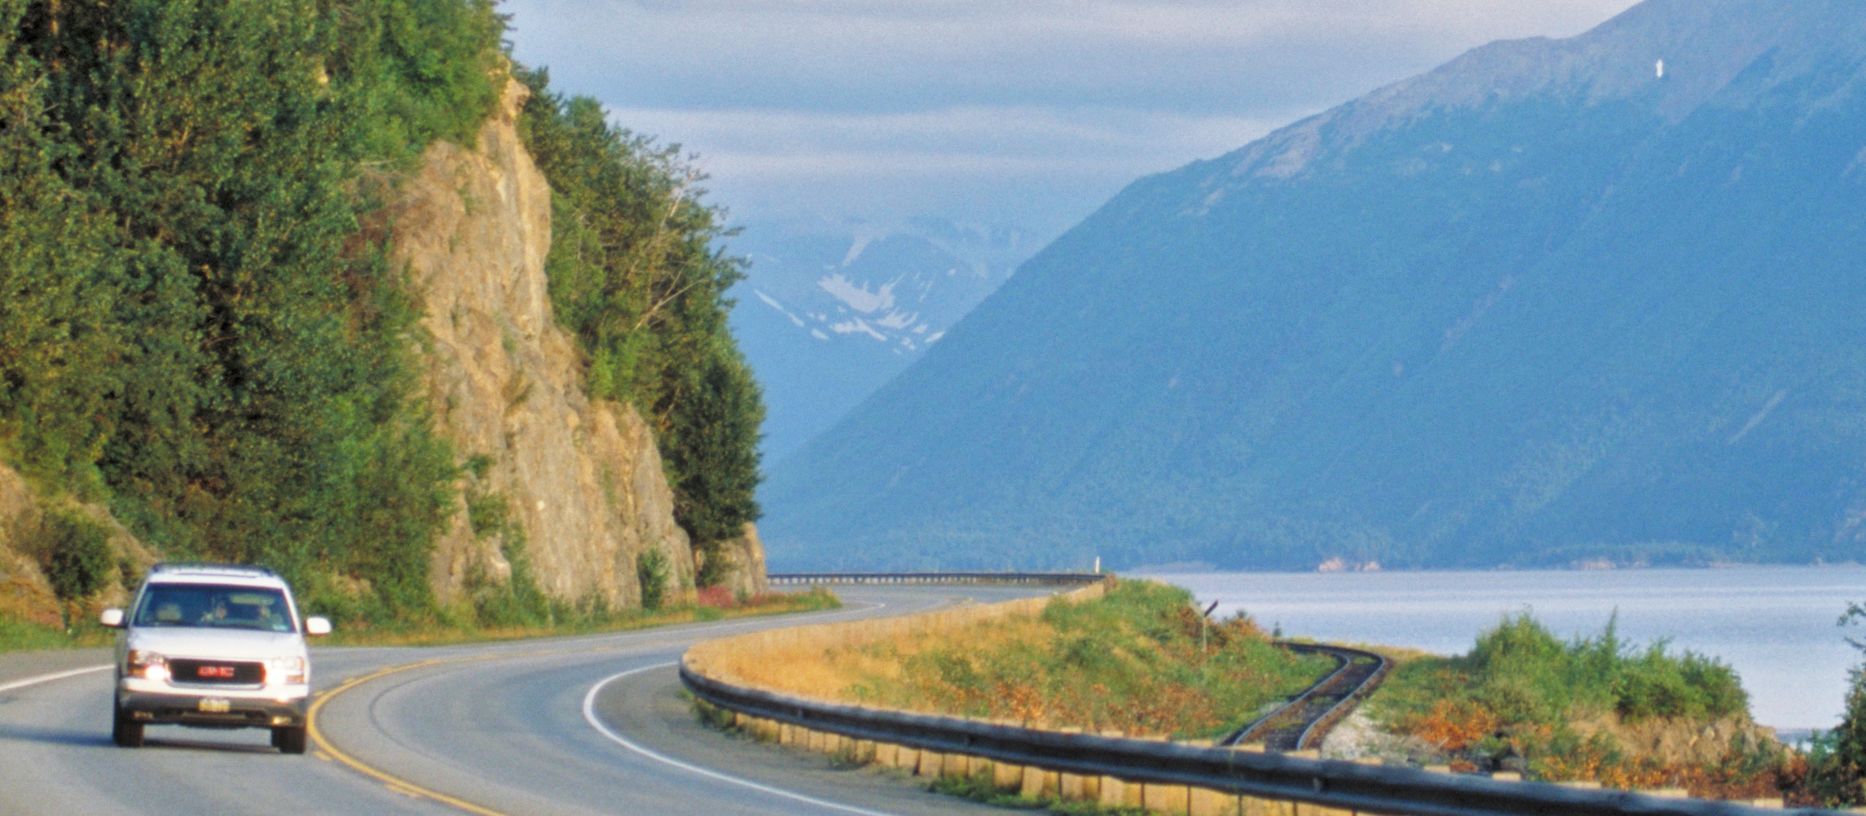 regionen/usa/alaska/allgemein/see-strasse-auto-panorama.cr1866x816-469x0